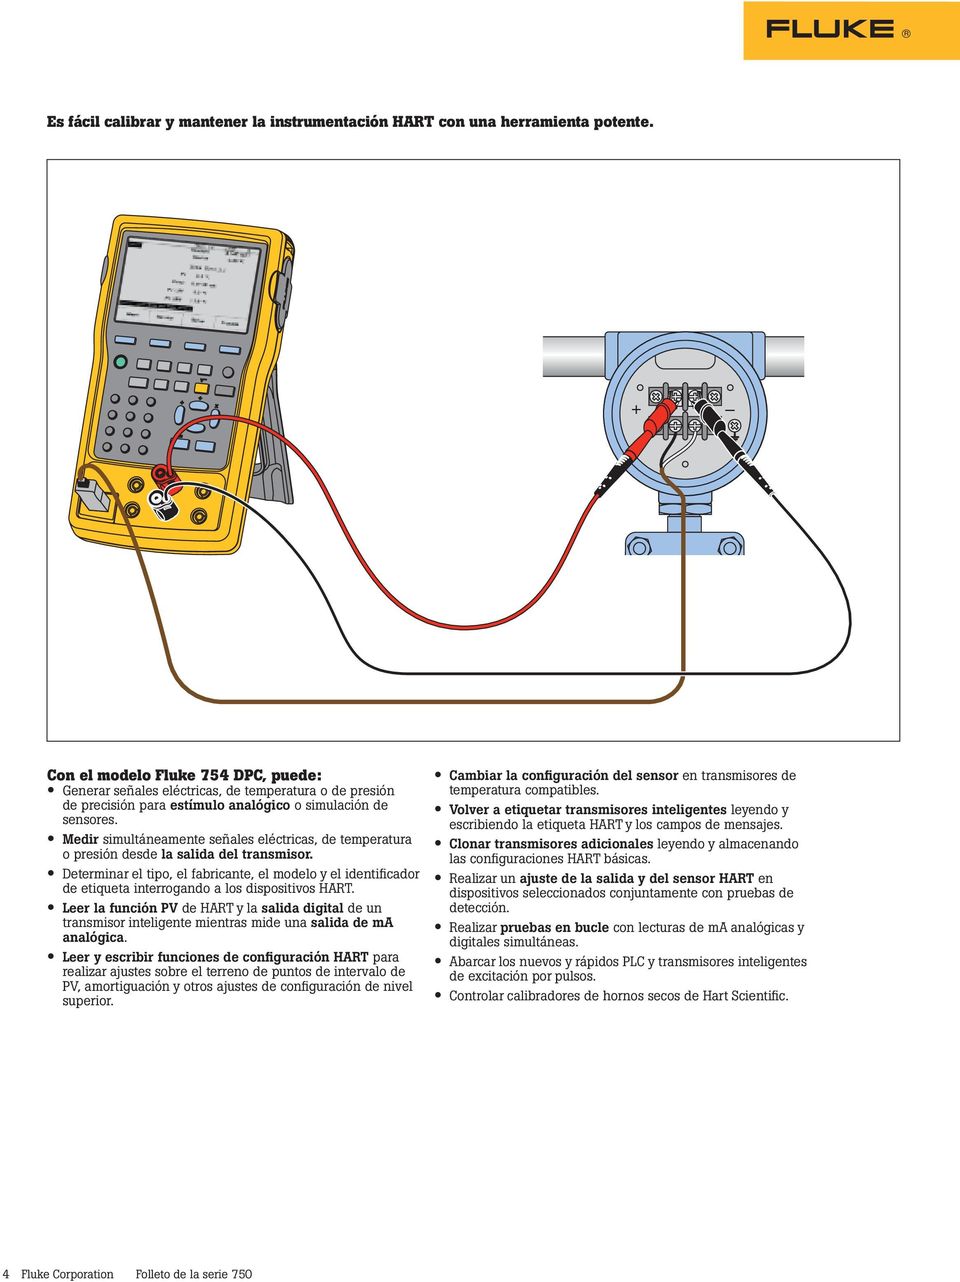 Medir simultáneamente señales eléctricas, de temperatura o presión desde la salida del transmisor.